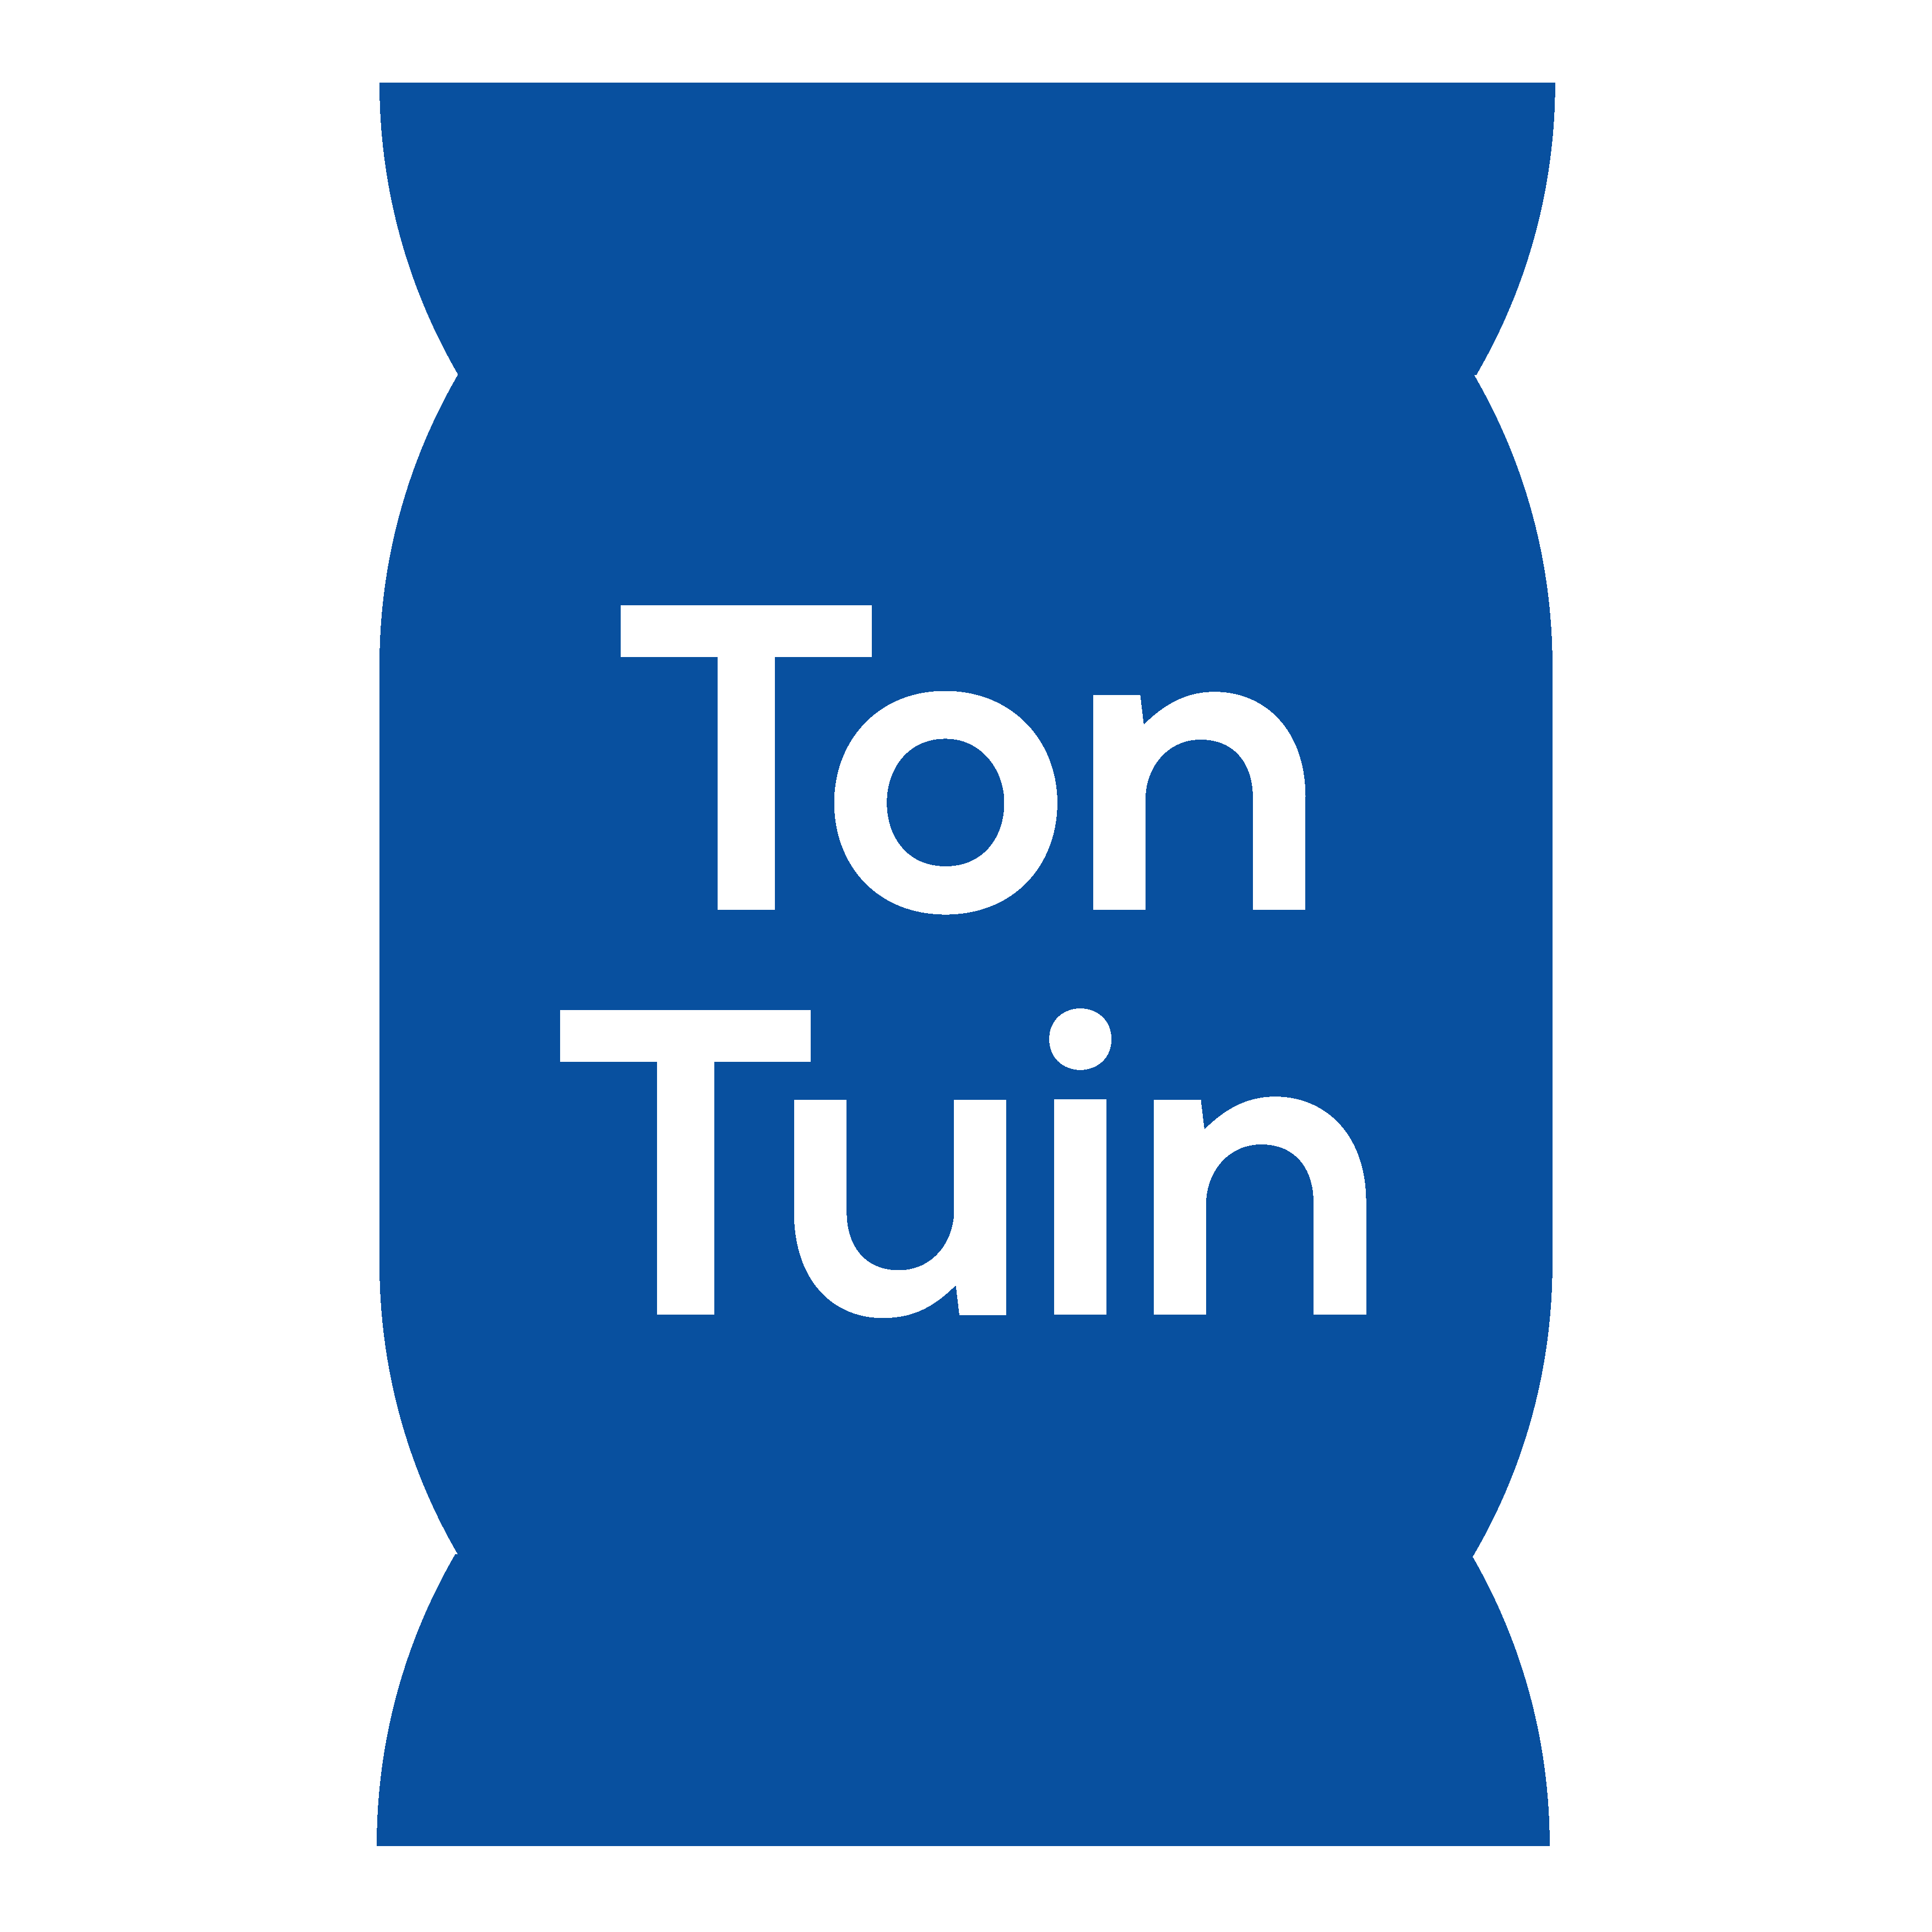 TonTuin is de multifunctionele circulaire regenton met plantenbak